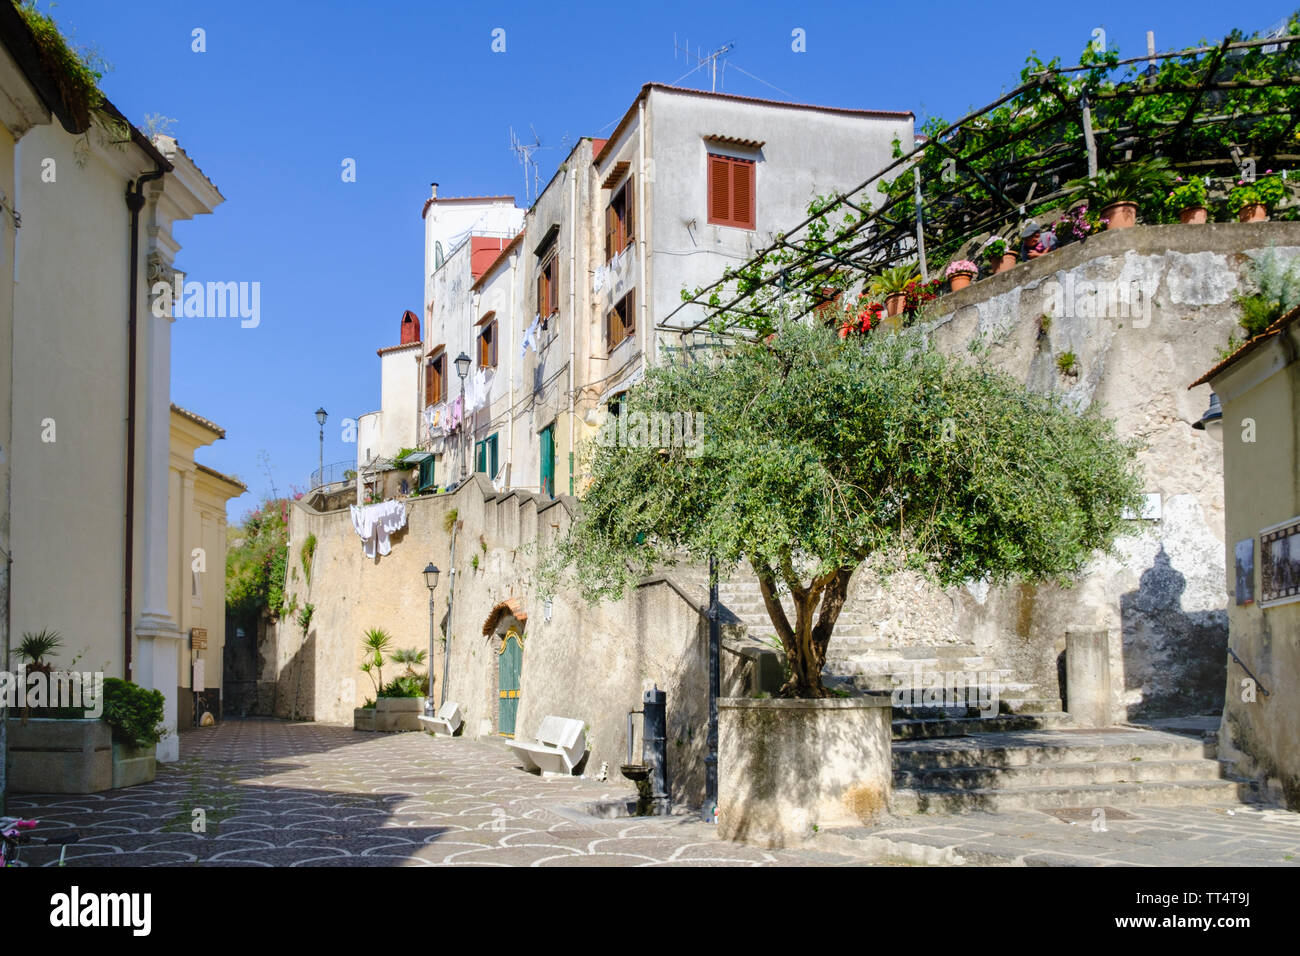 Häuser in einem italienischen Dorf in einem ländlichen Gebiet von Kampanien, Provence von Salerno im südlichen Italien Stockfoto